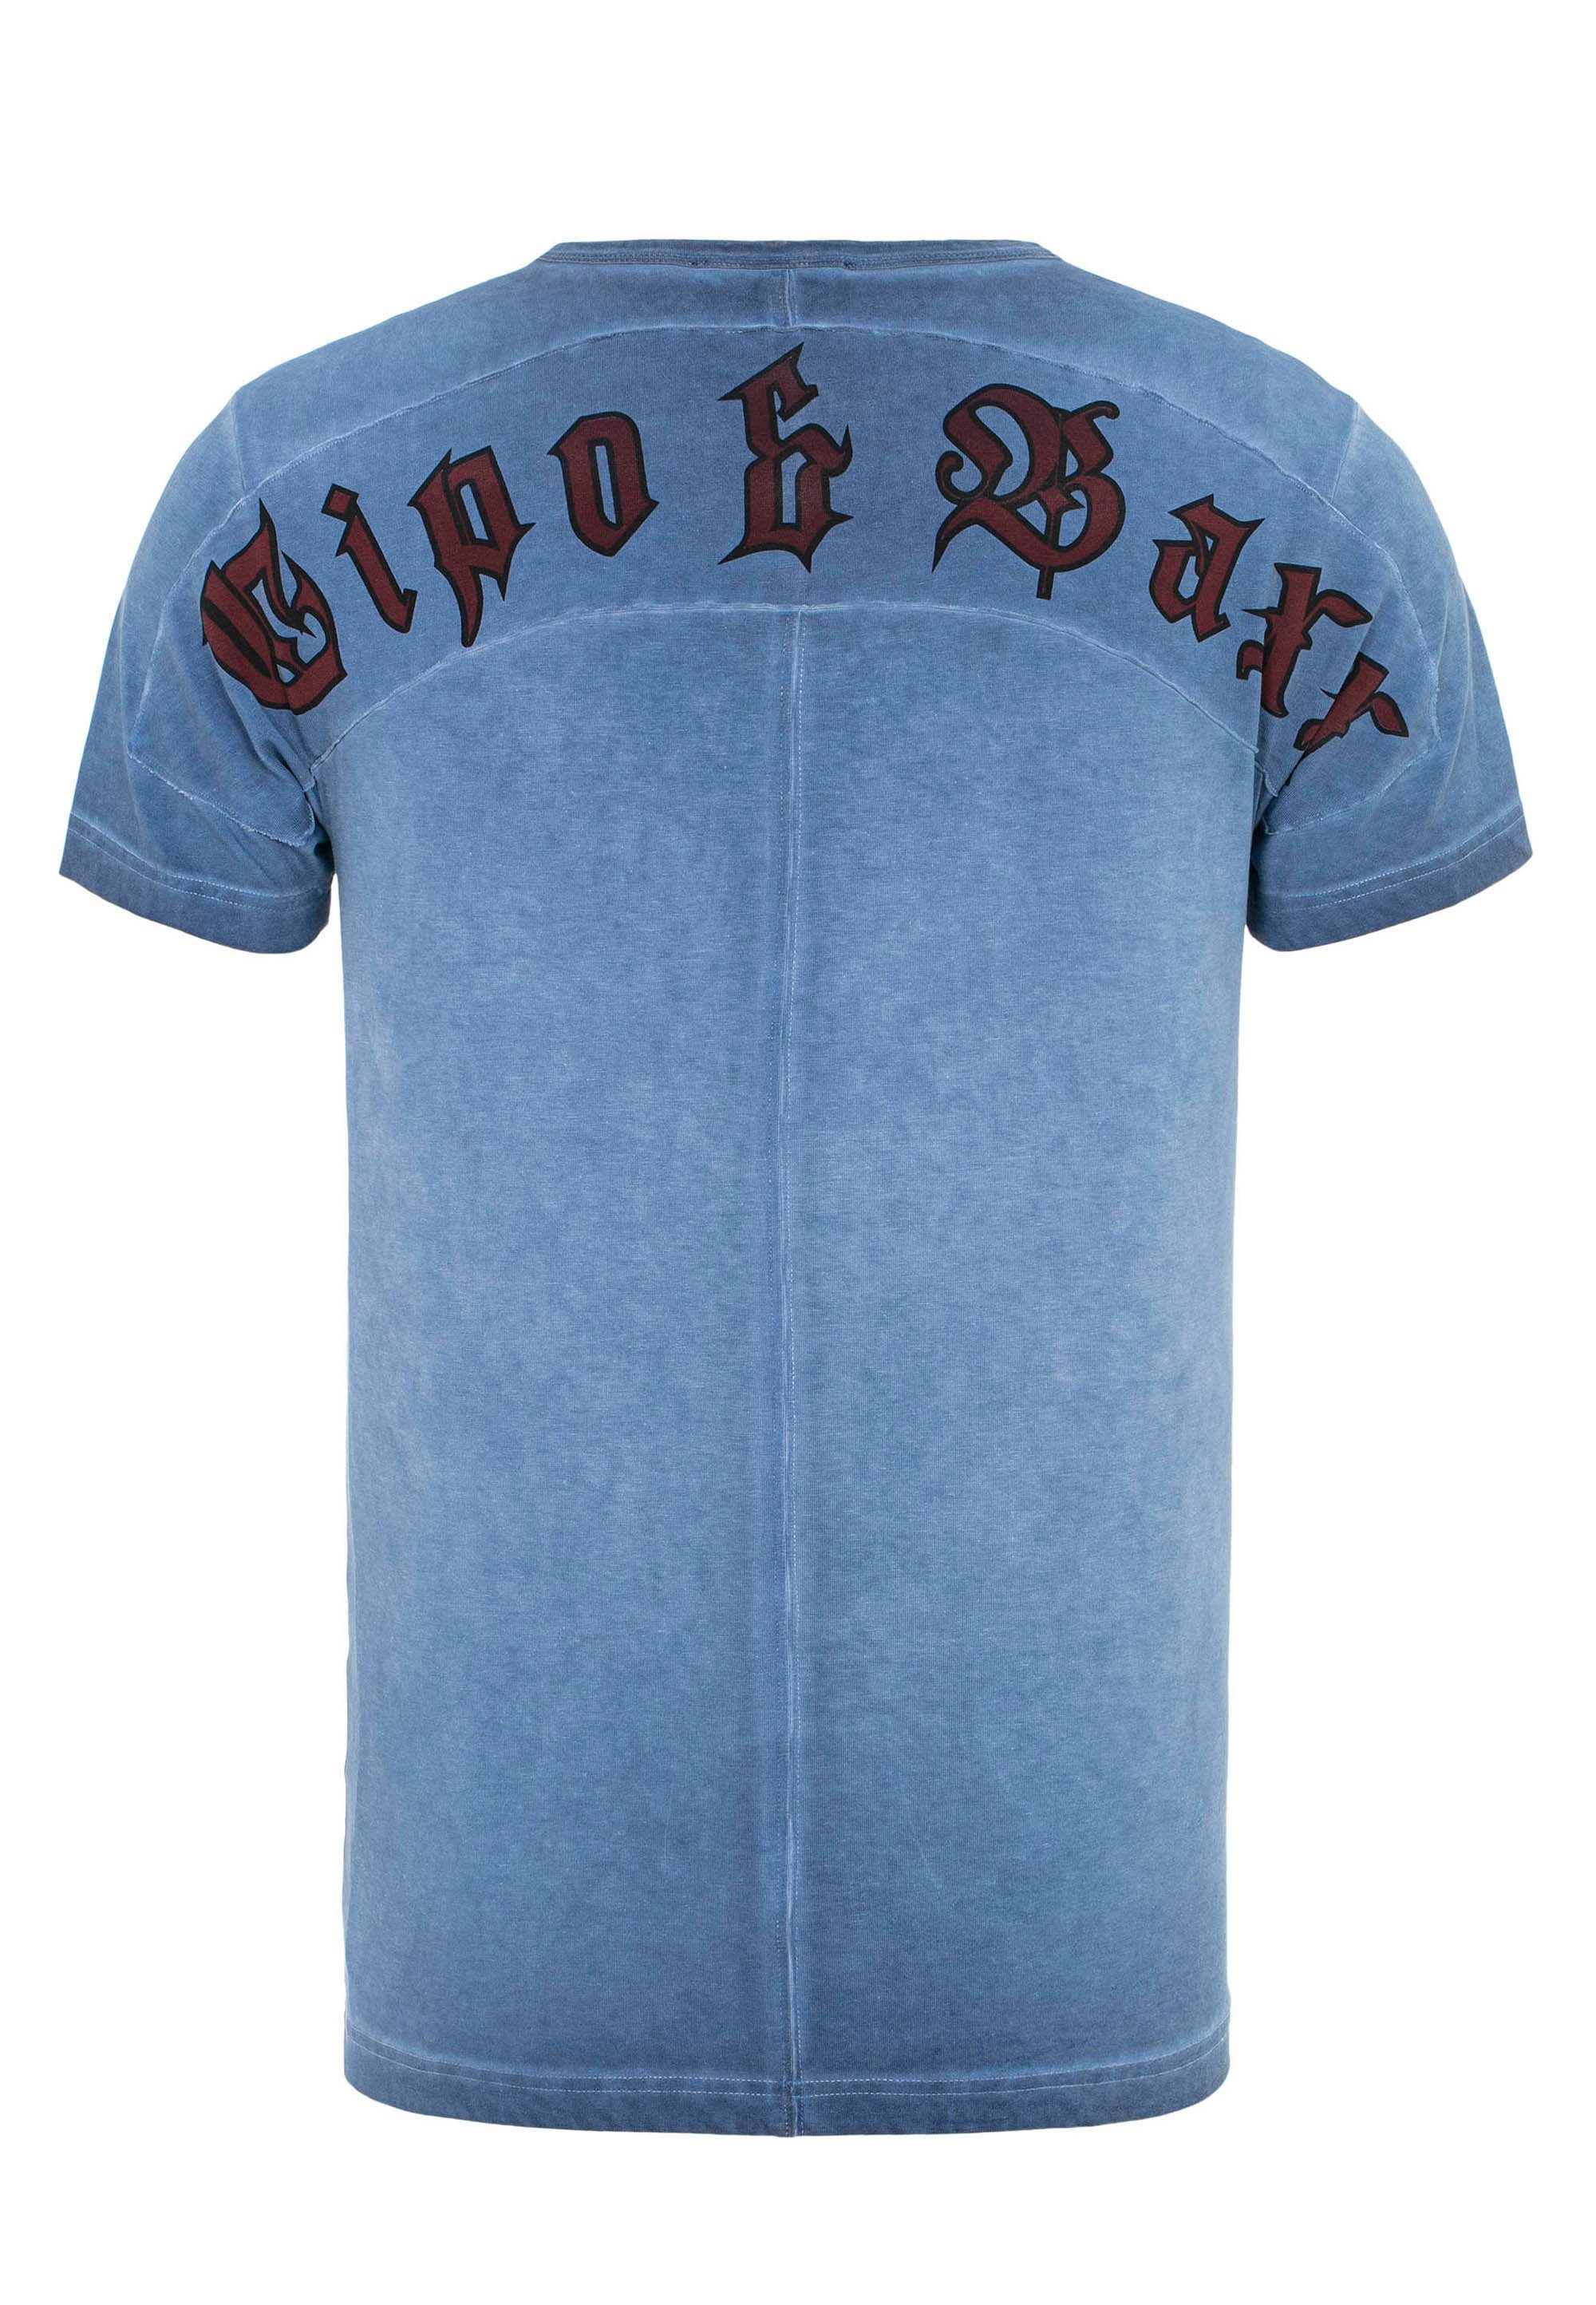 & Baxx blau mit Aufdruck Rock&Pace T-Shirt Cipo